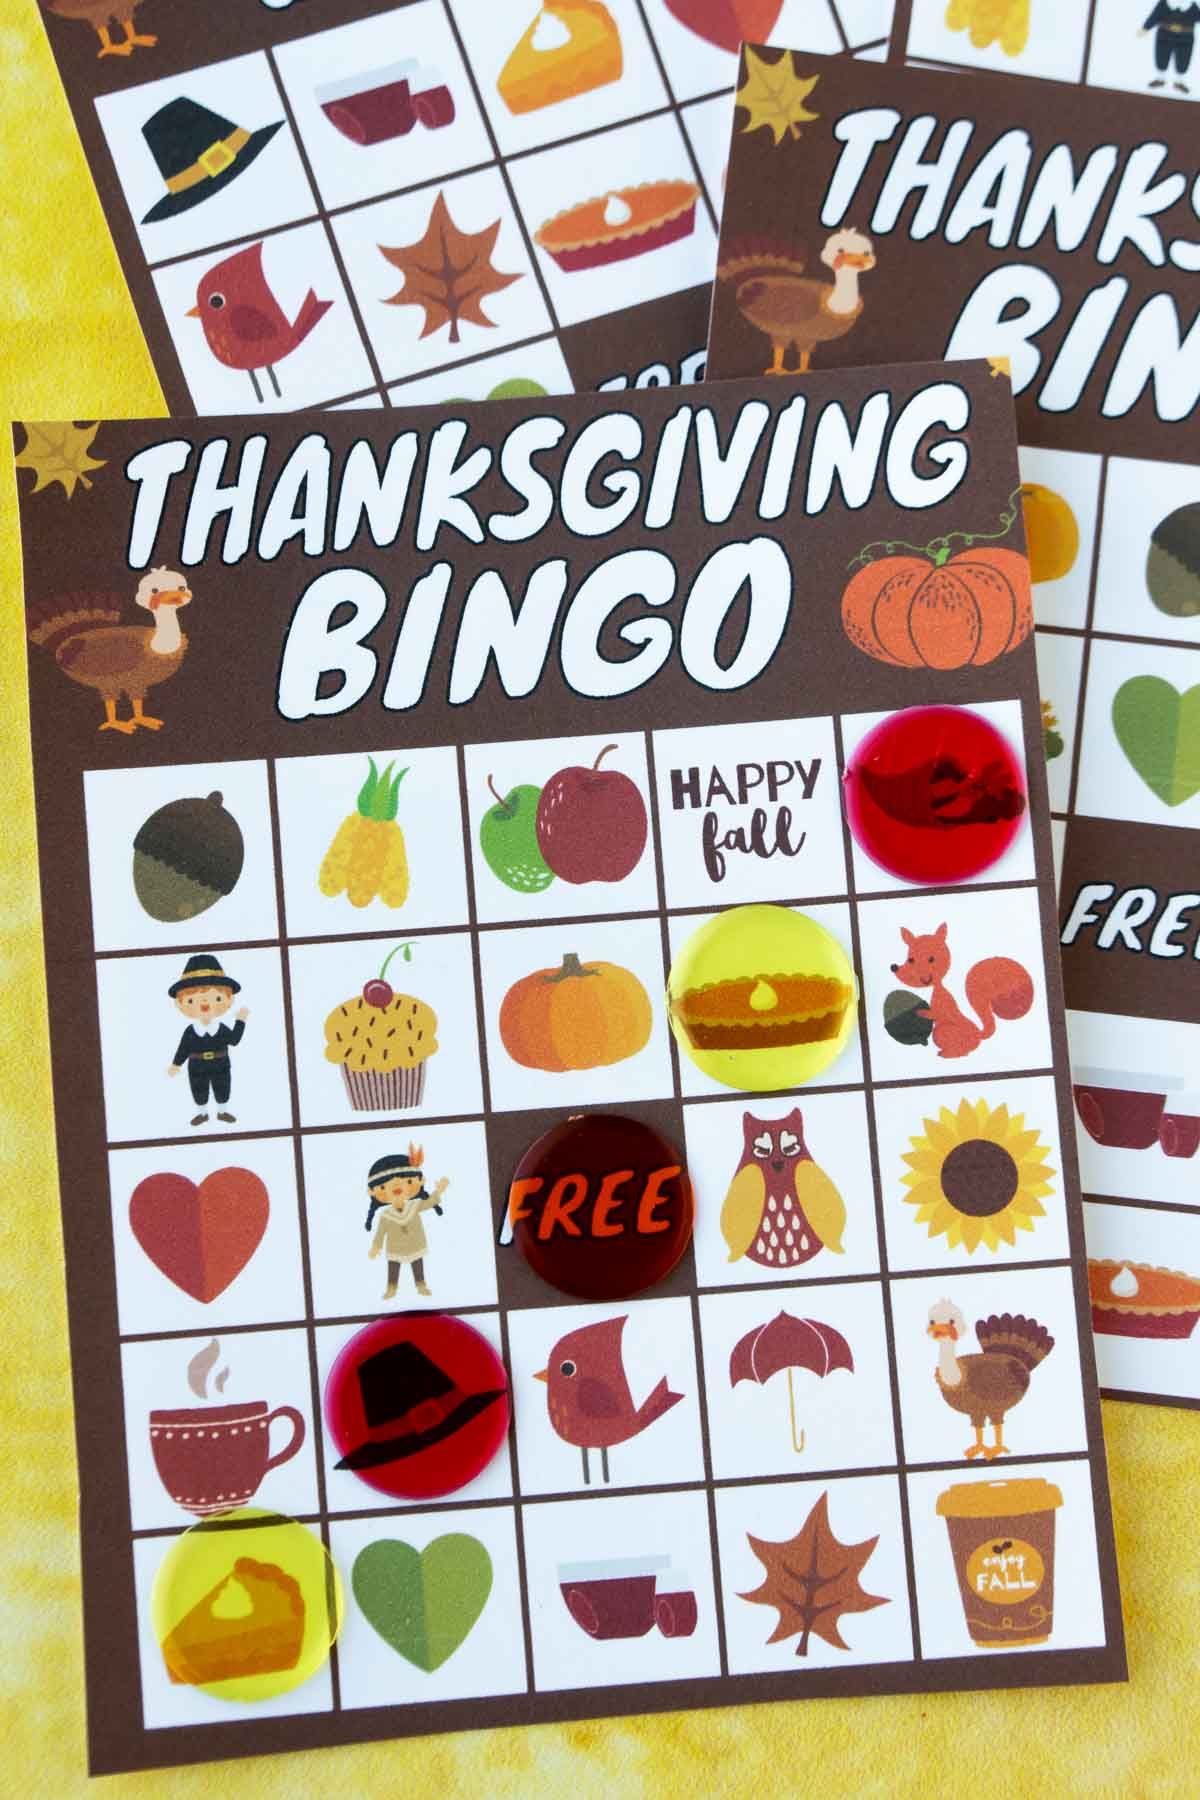 Díkůvzdání bingo karta se značkami bingo